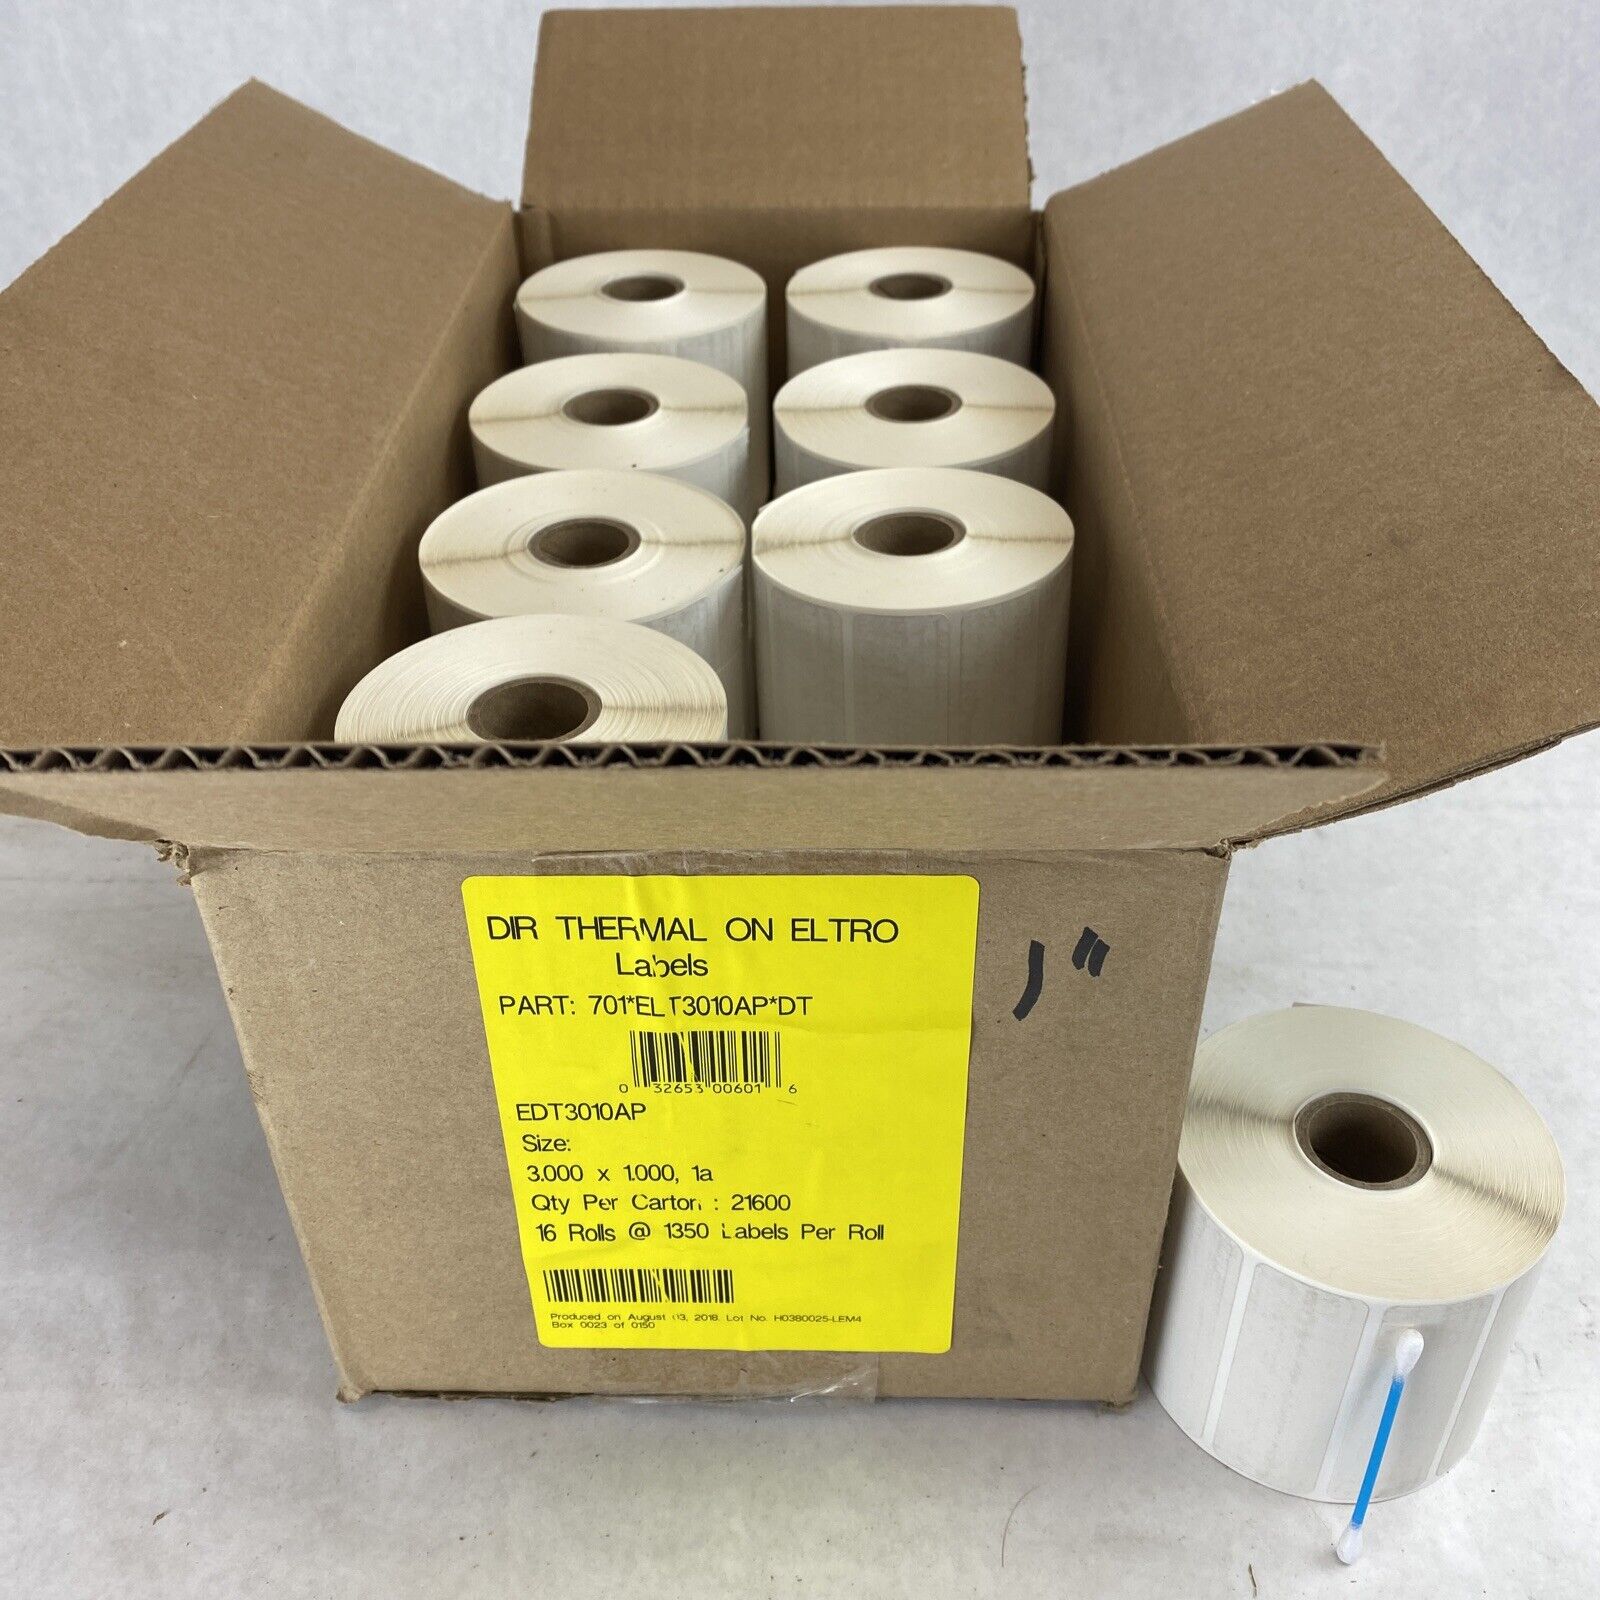 16 rolls x 1350 labels ELTRO 701*ELT3010AP*DT 3" x 1" for thermal printer